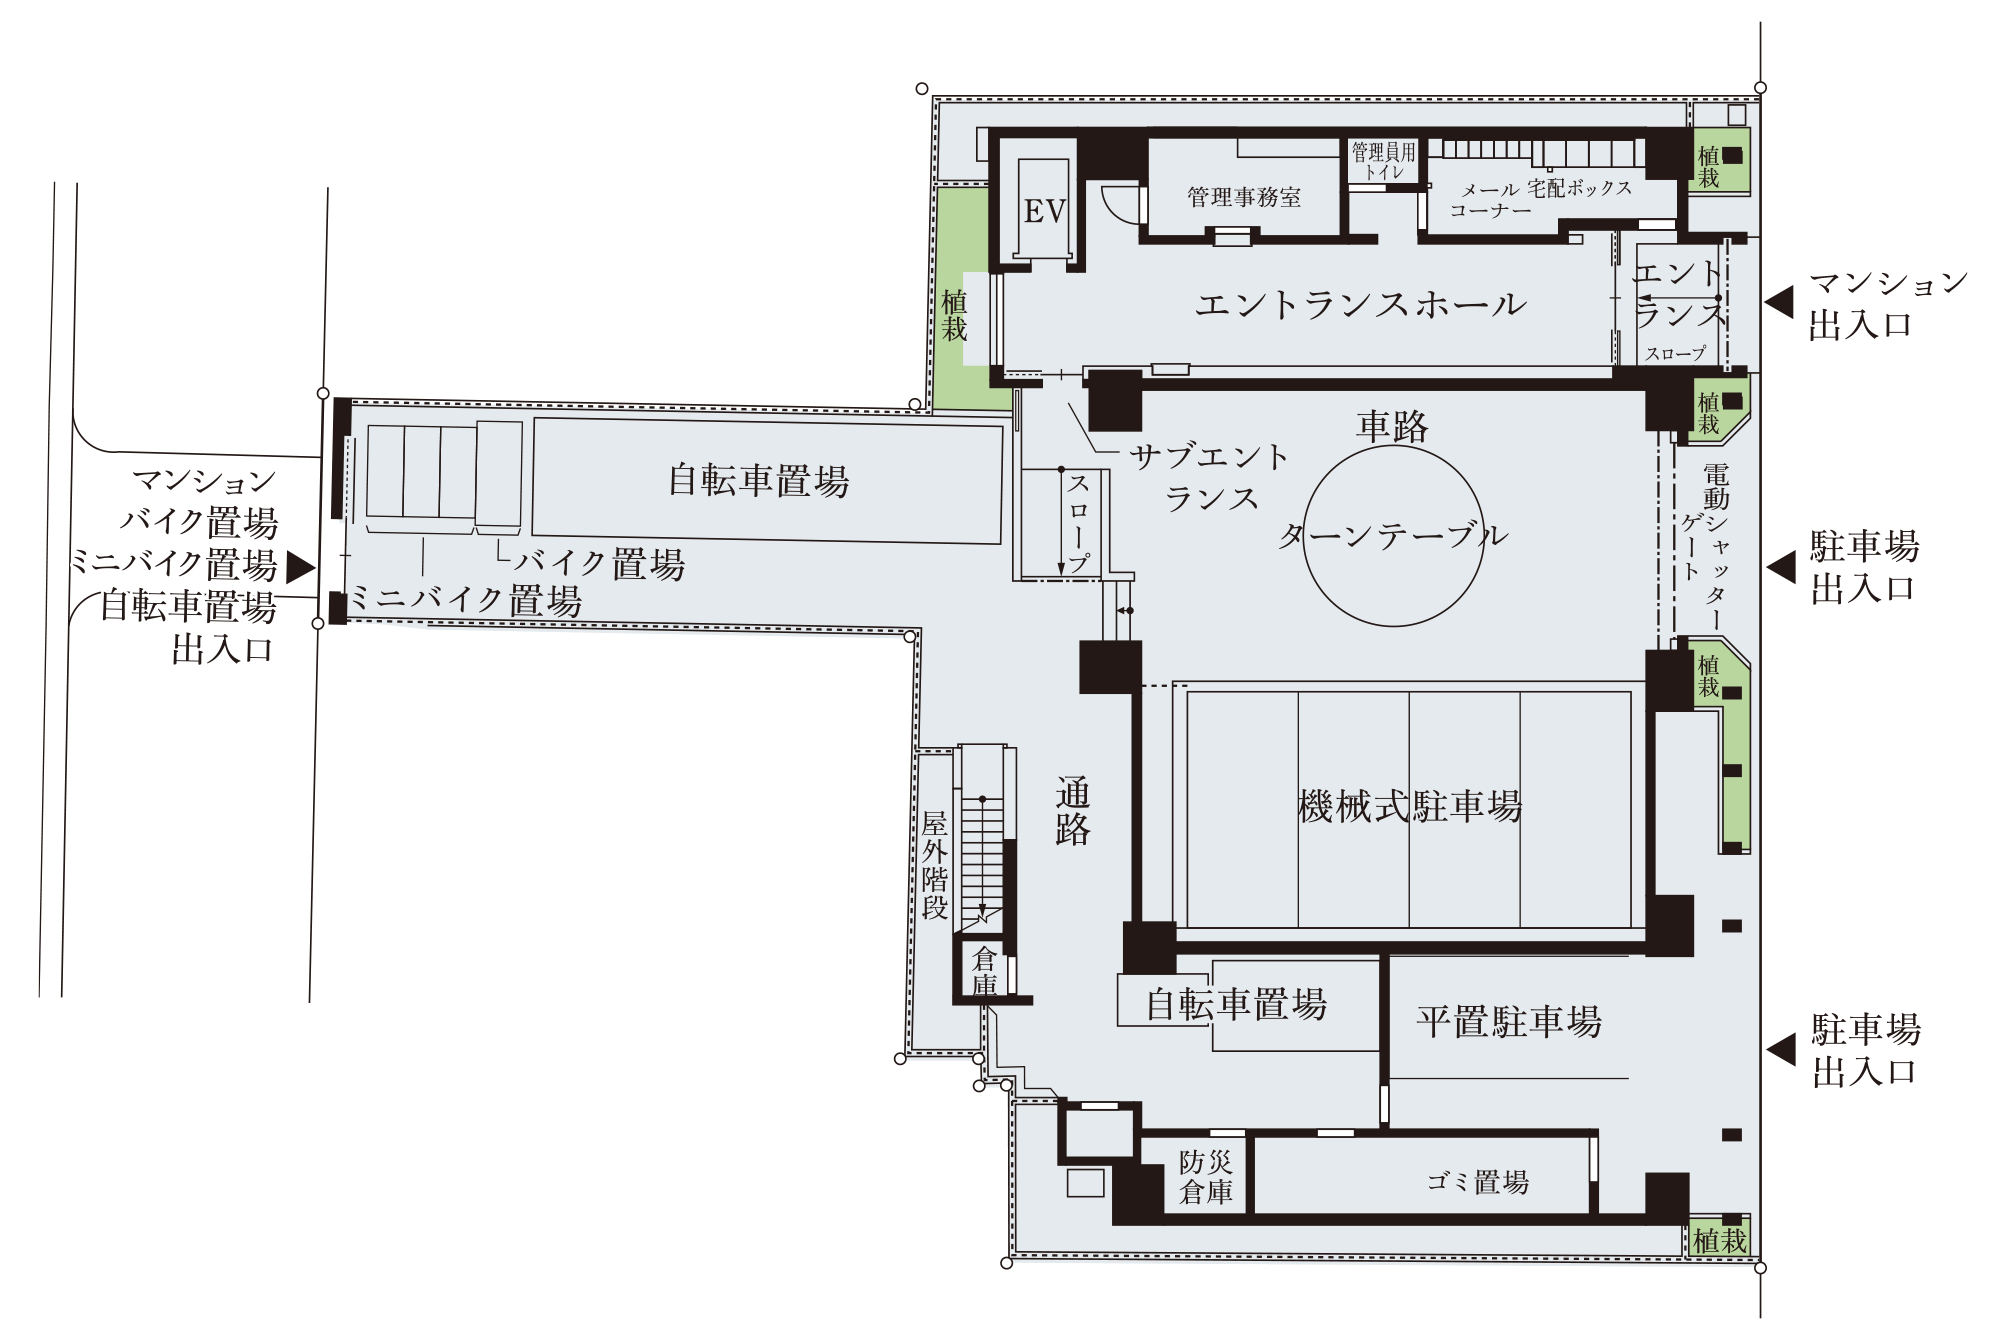 1階敷地配置概念図